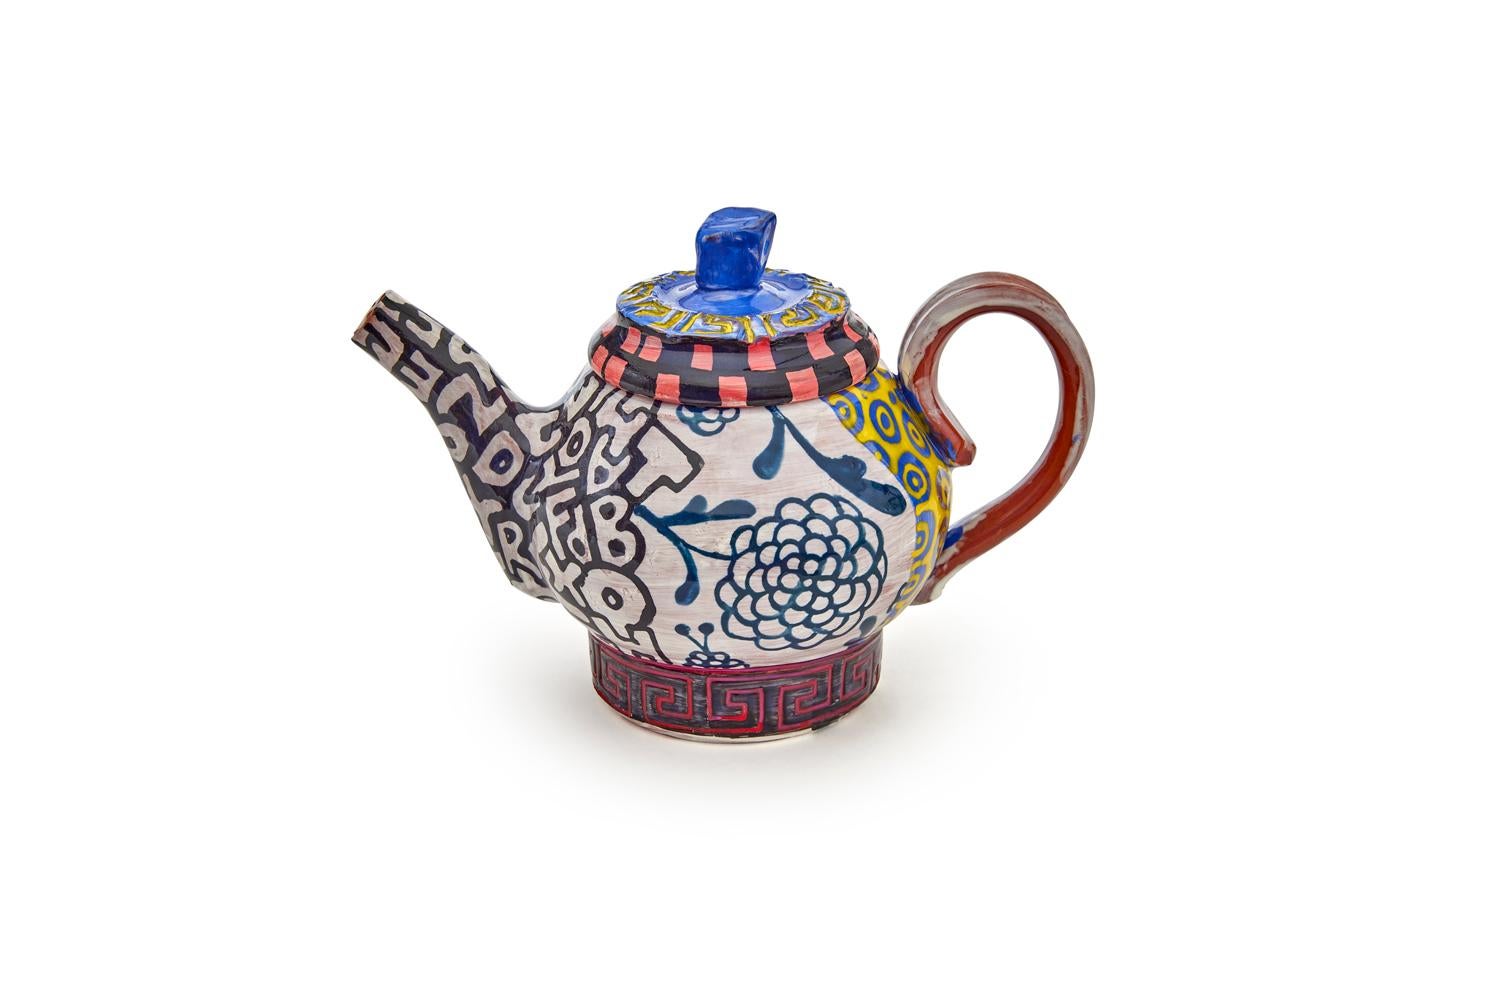 Roberto Lugo
Joan Mitchell Teapot, 2021
Glazed Ceramic
5.75 x 8 x 4.5 in